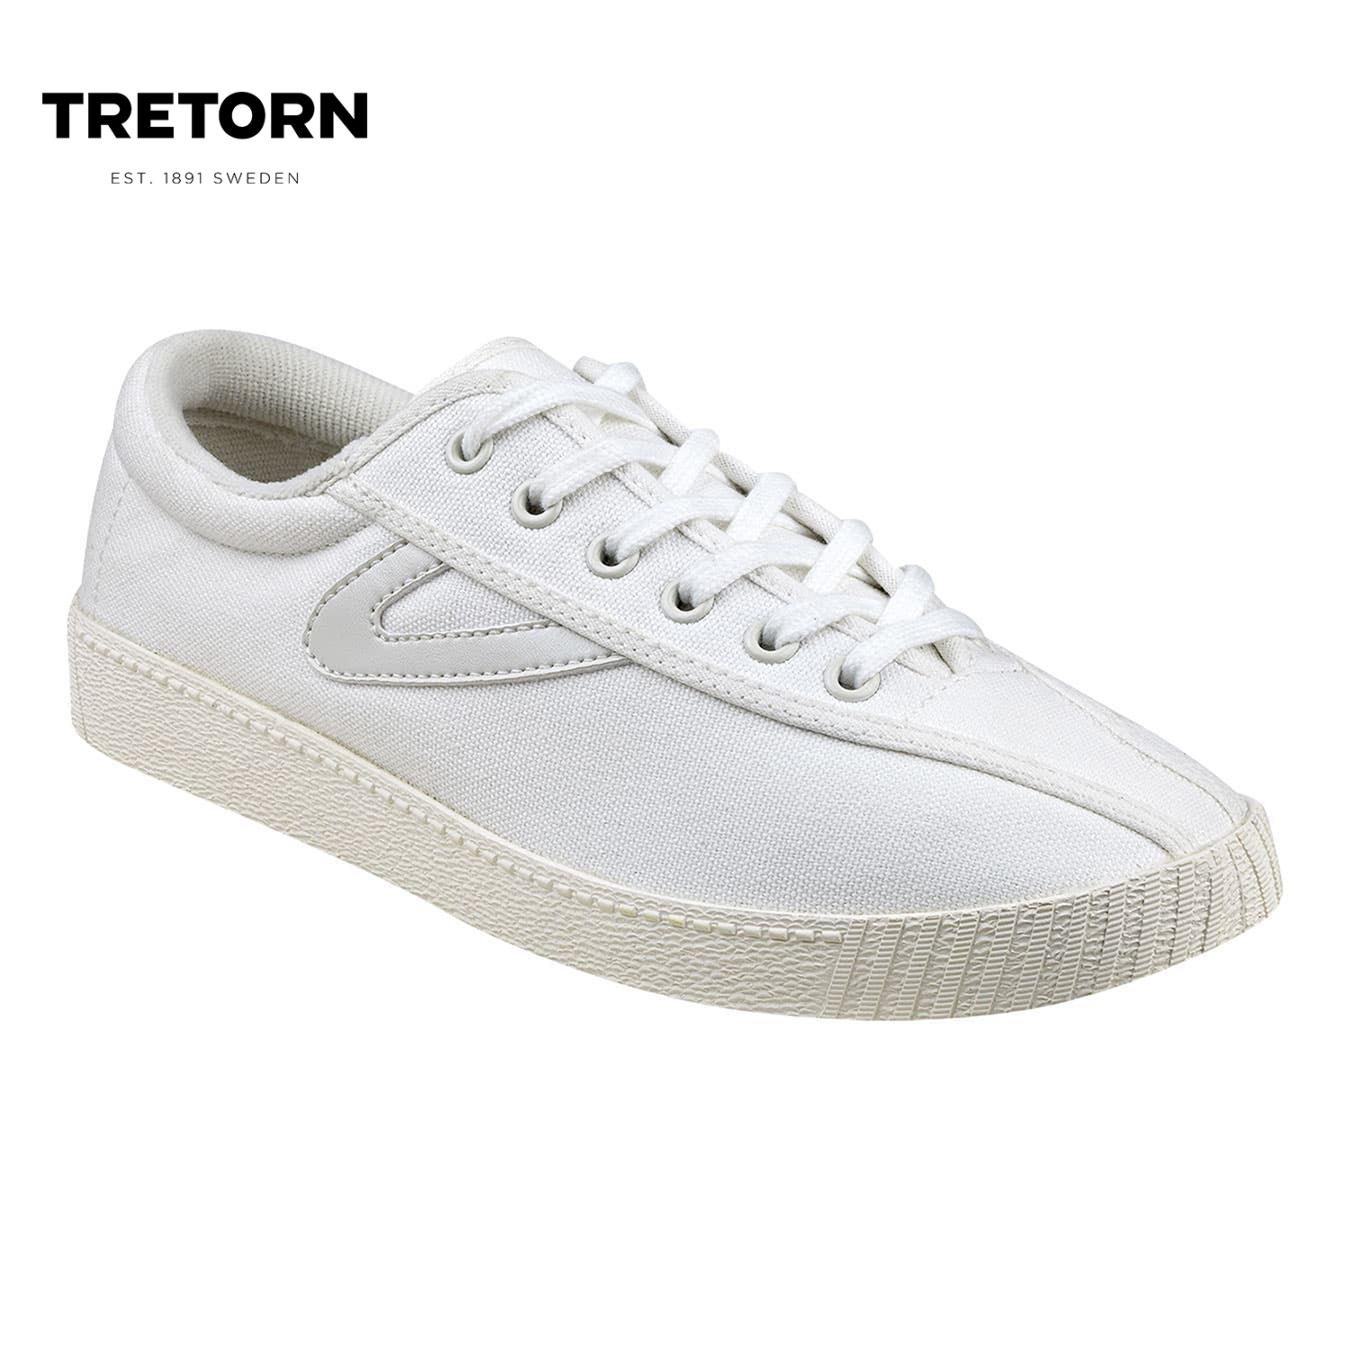 tretorn white